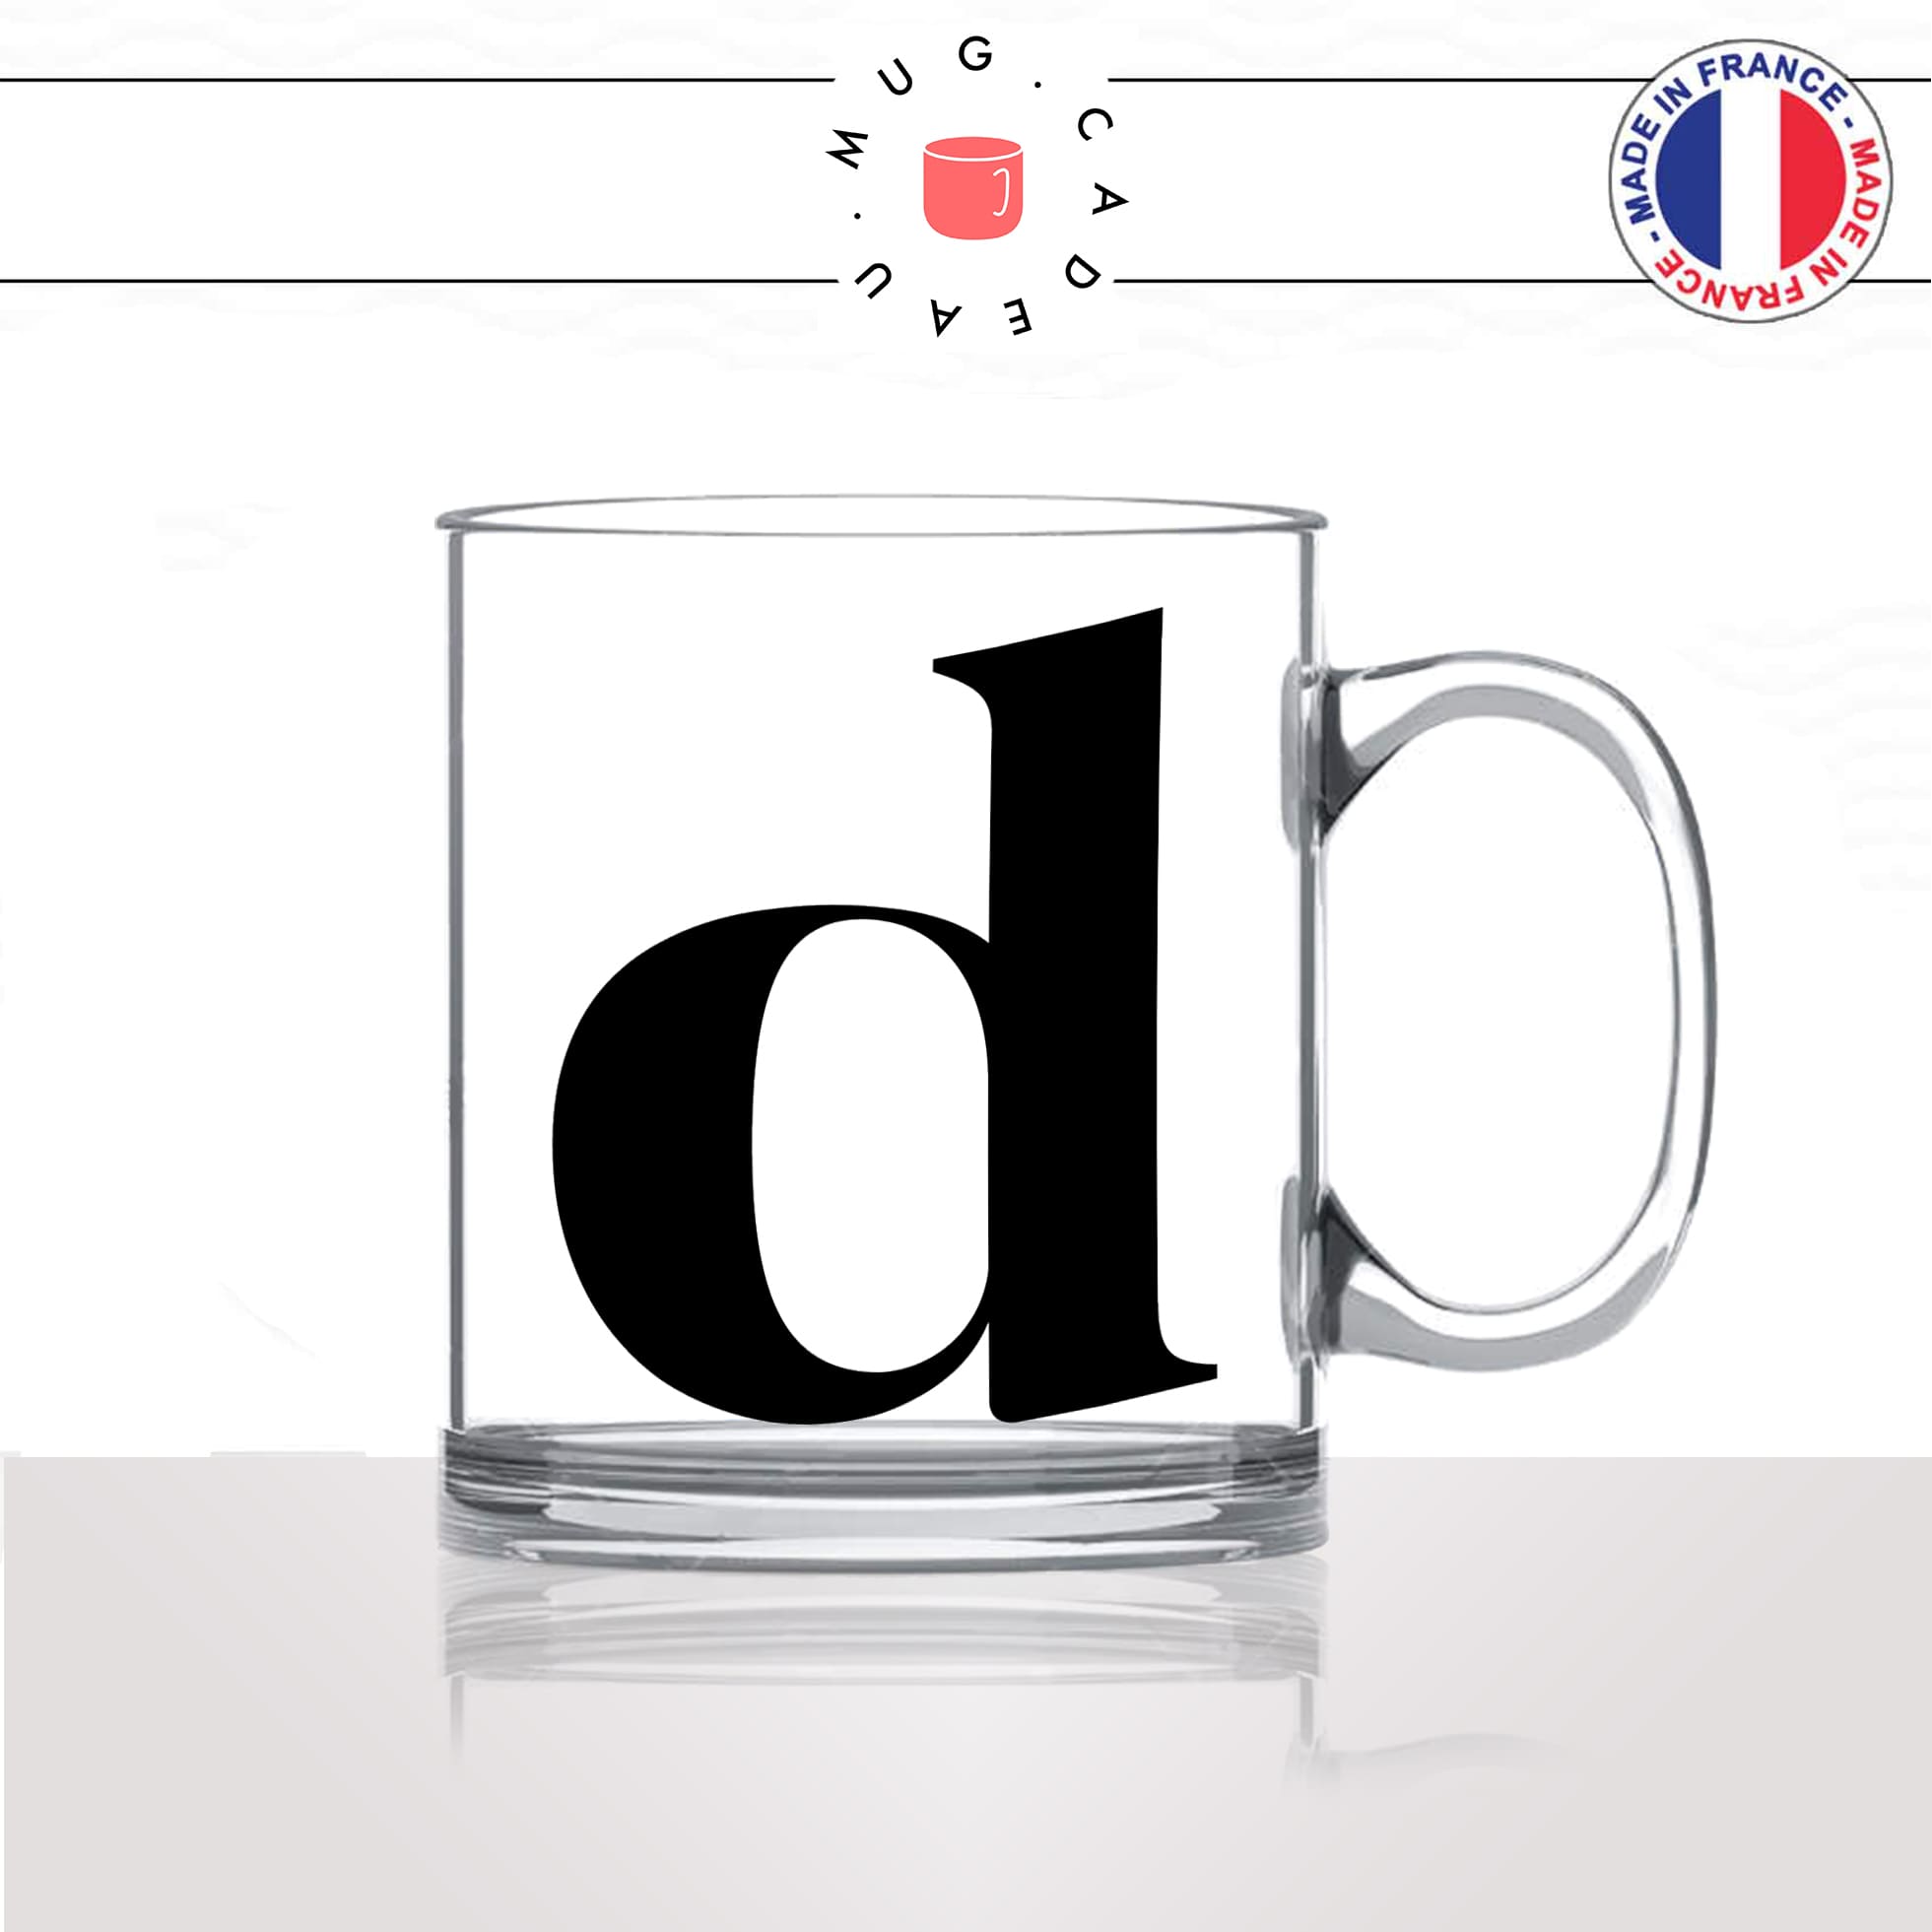 mug-tasse-en-verre-transparent-glass-initiale-D-dorine-dea-dylan-dydy-majuscule-lettre-collegue-original-idée-cadeau-fun-cool-café-thé2